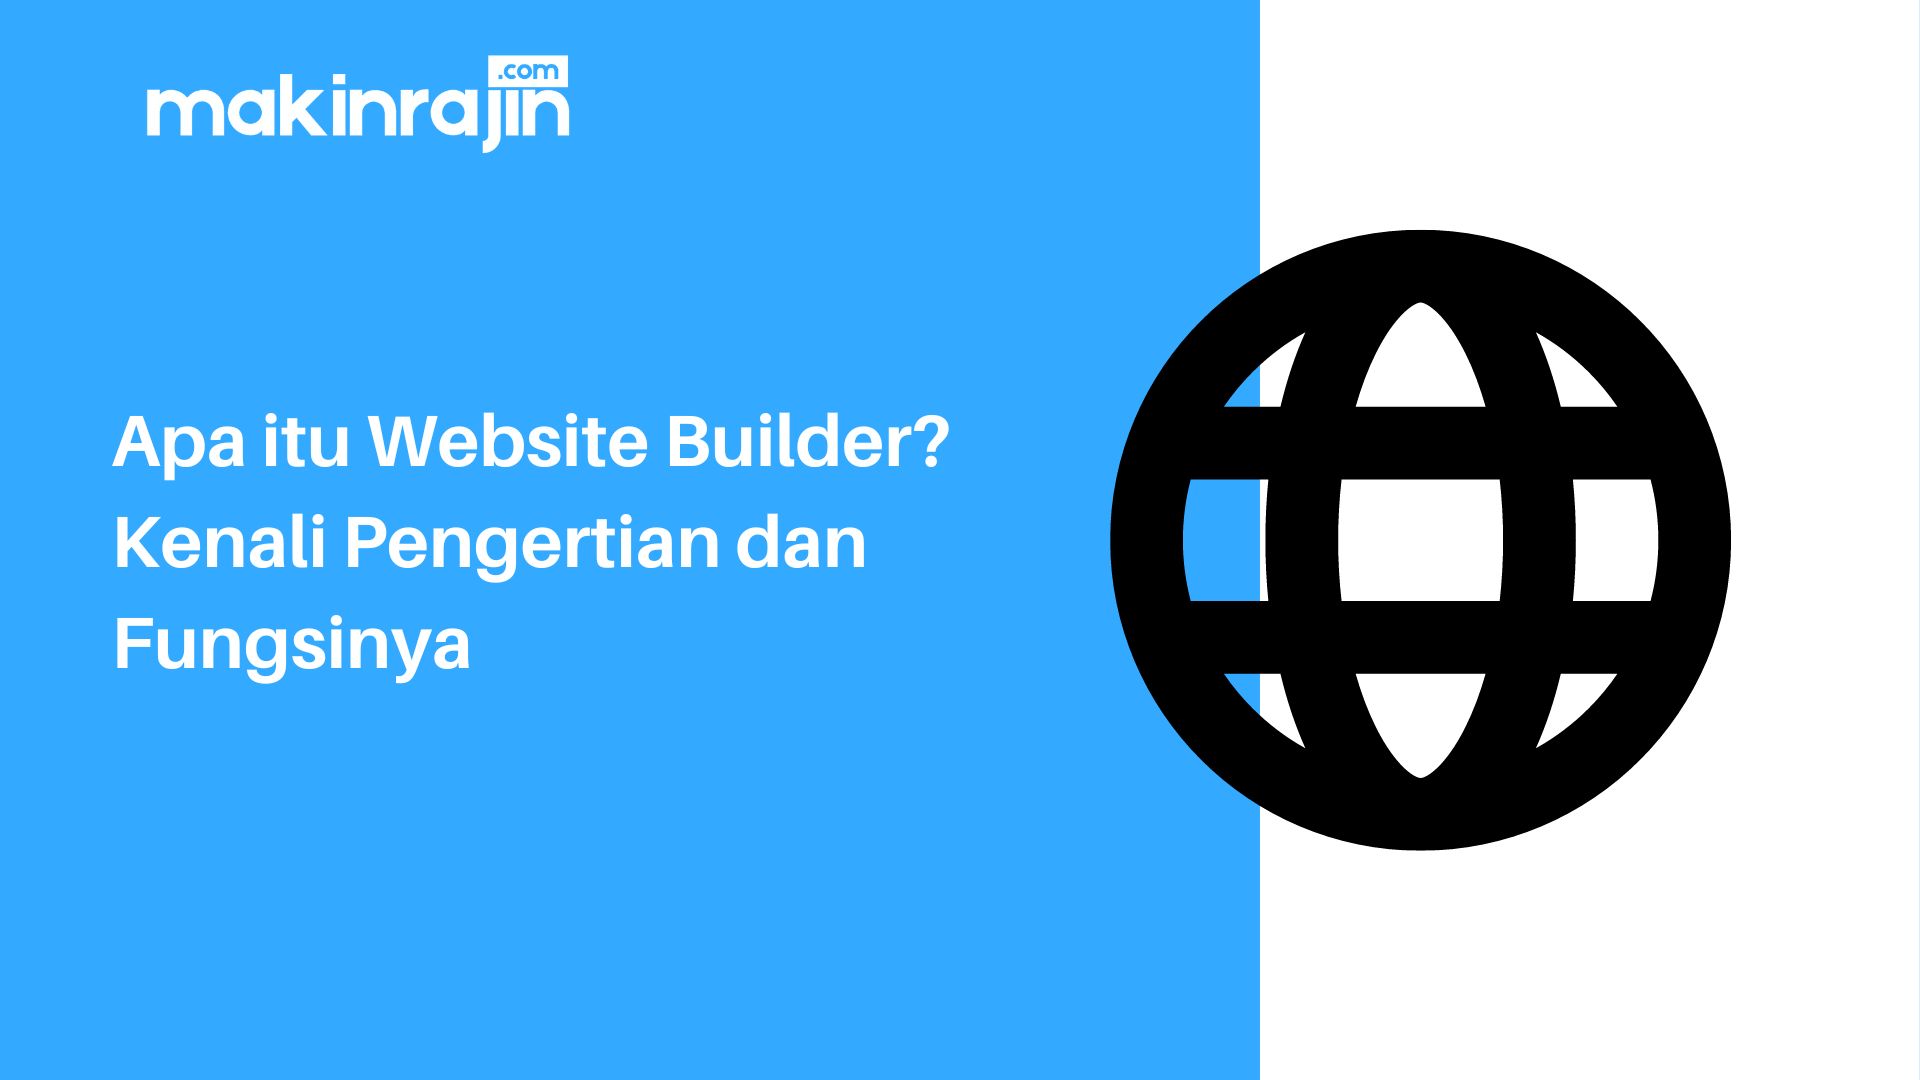 Apa itu Website Builder? Kenali Pengertian dan Fungsinya